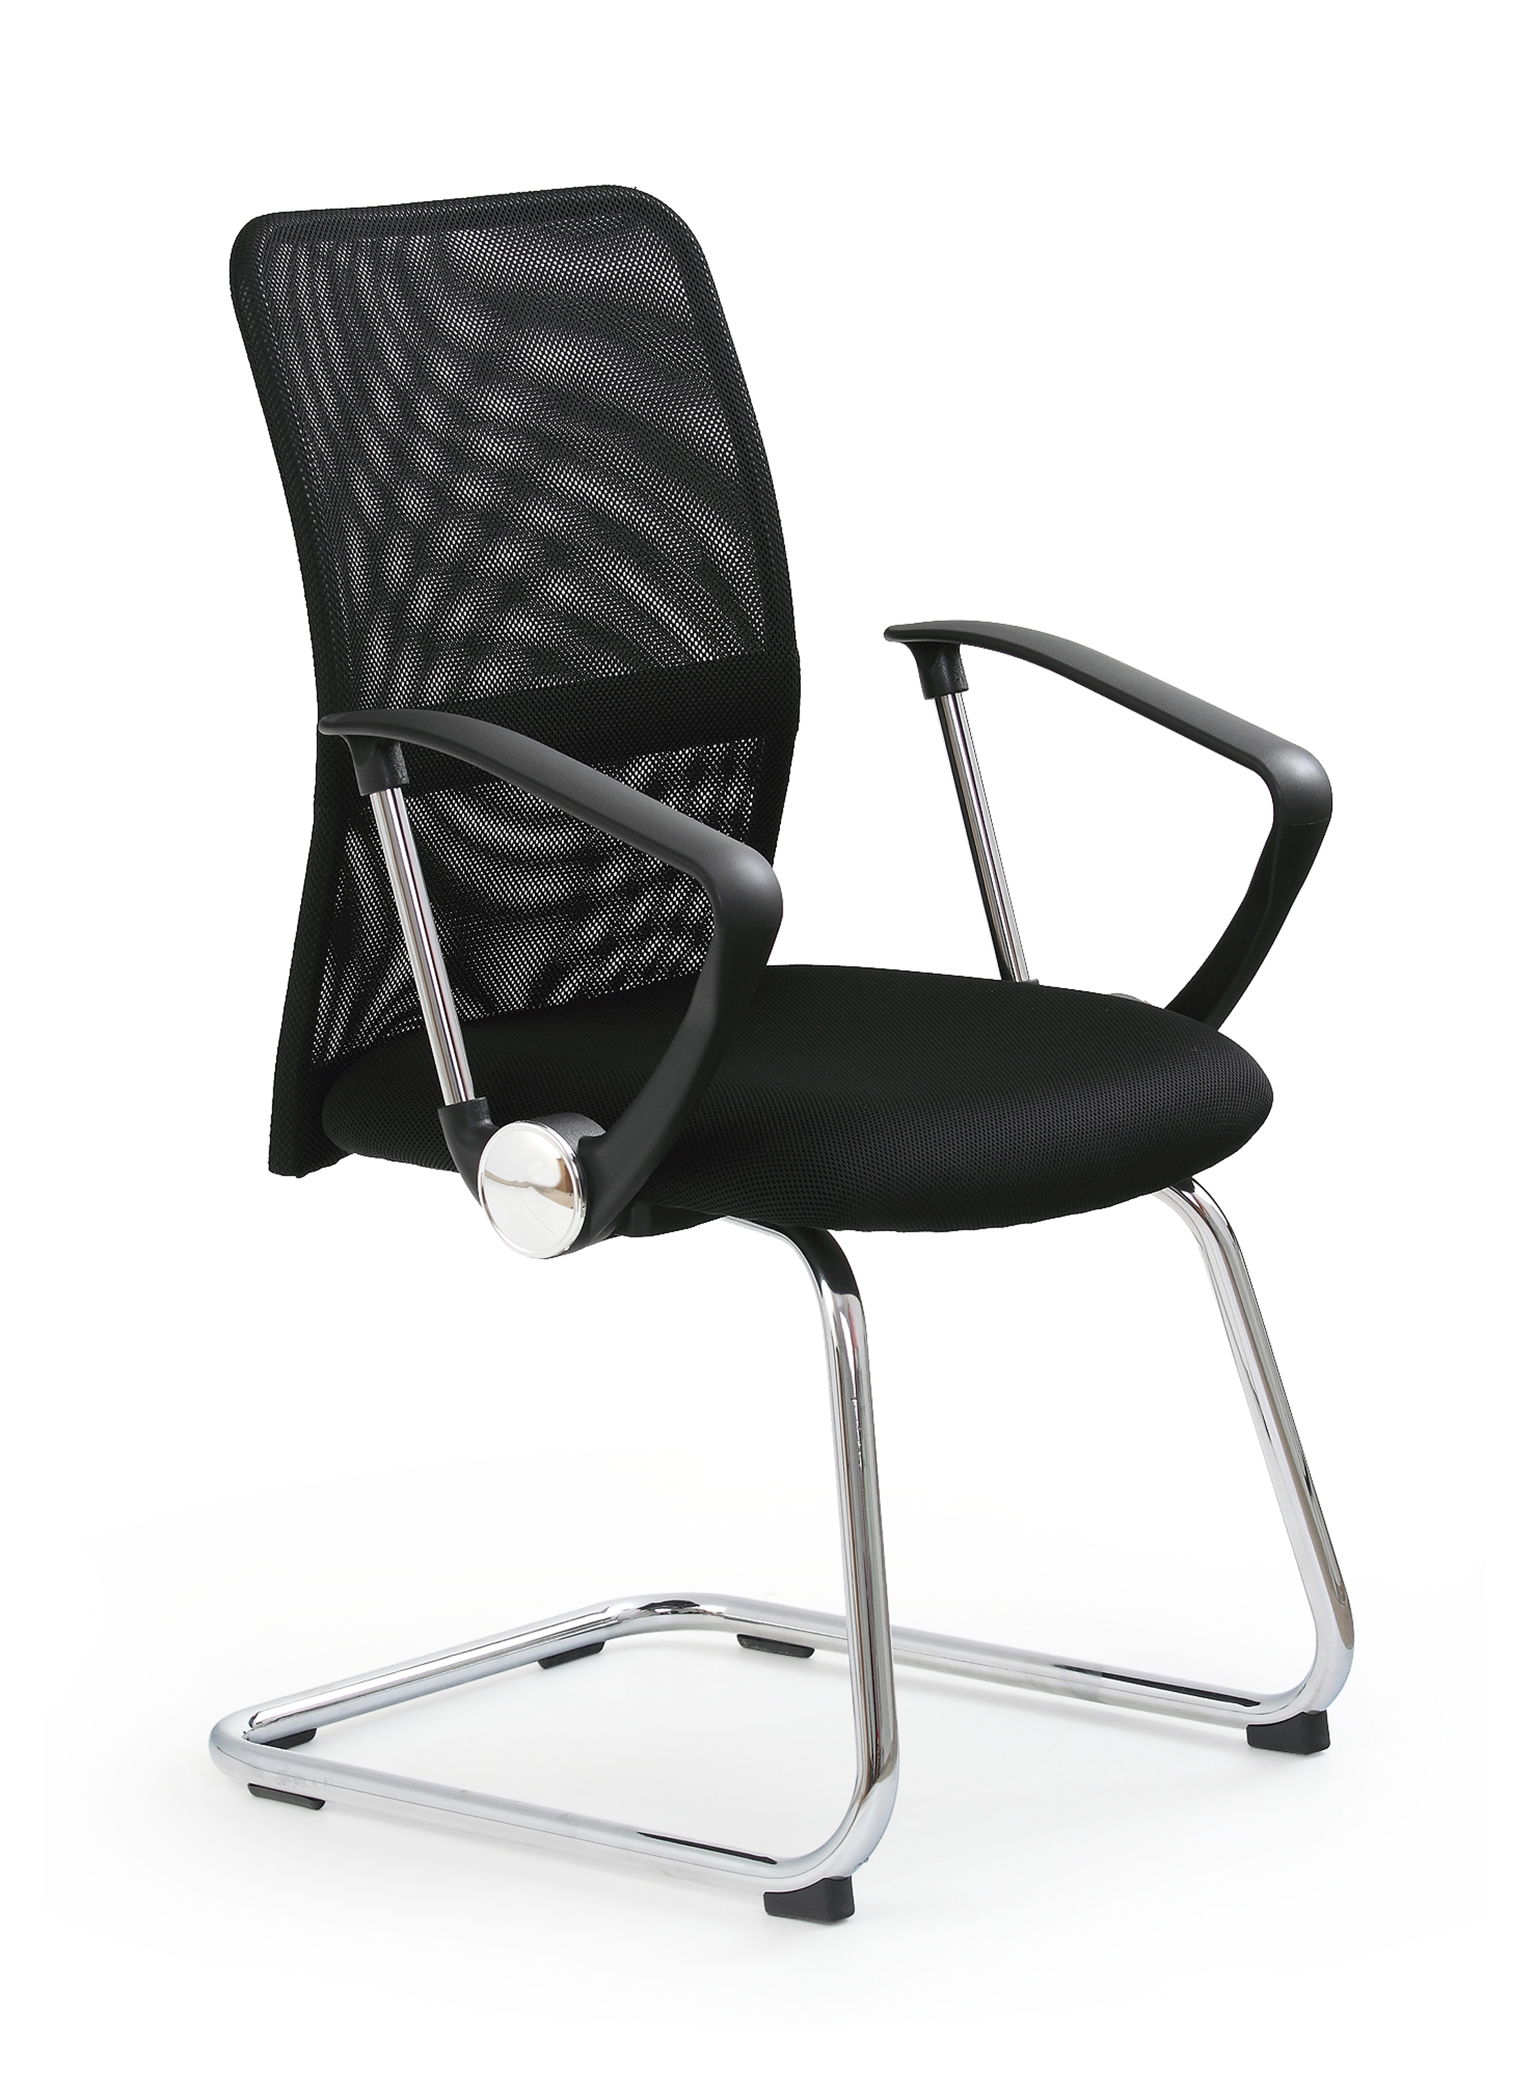 Biuro kėdė VIRE SKID, juoda - 2